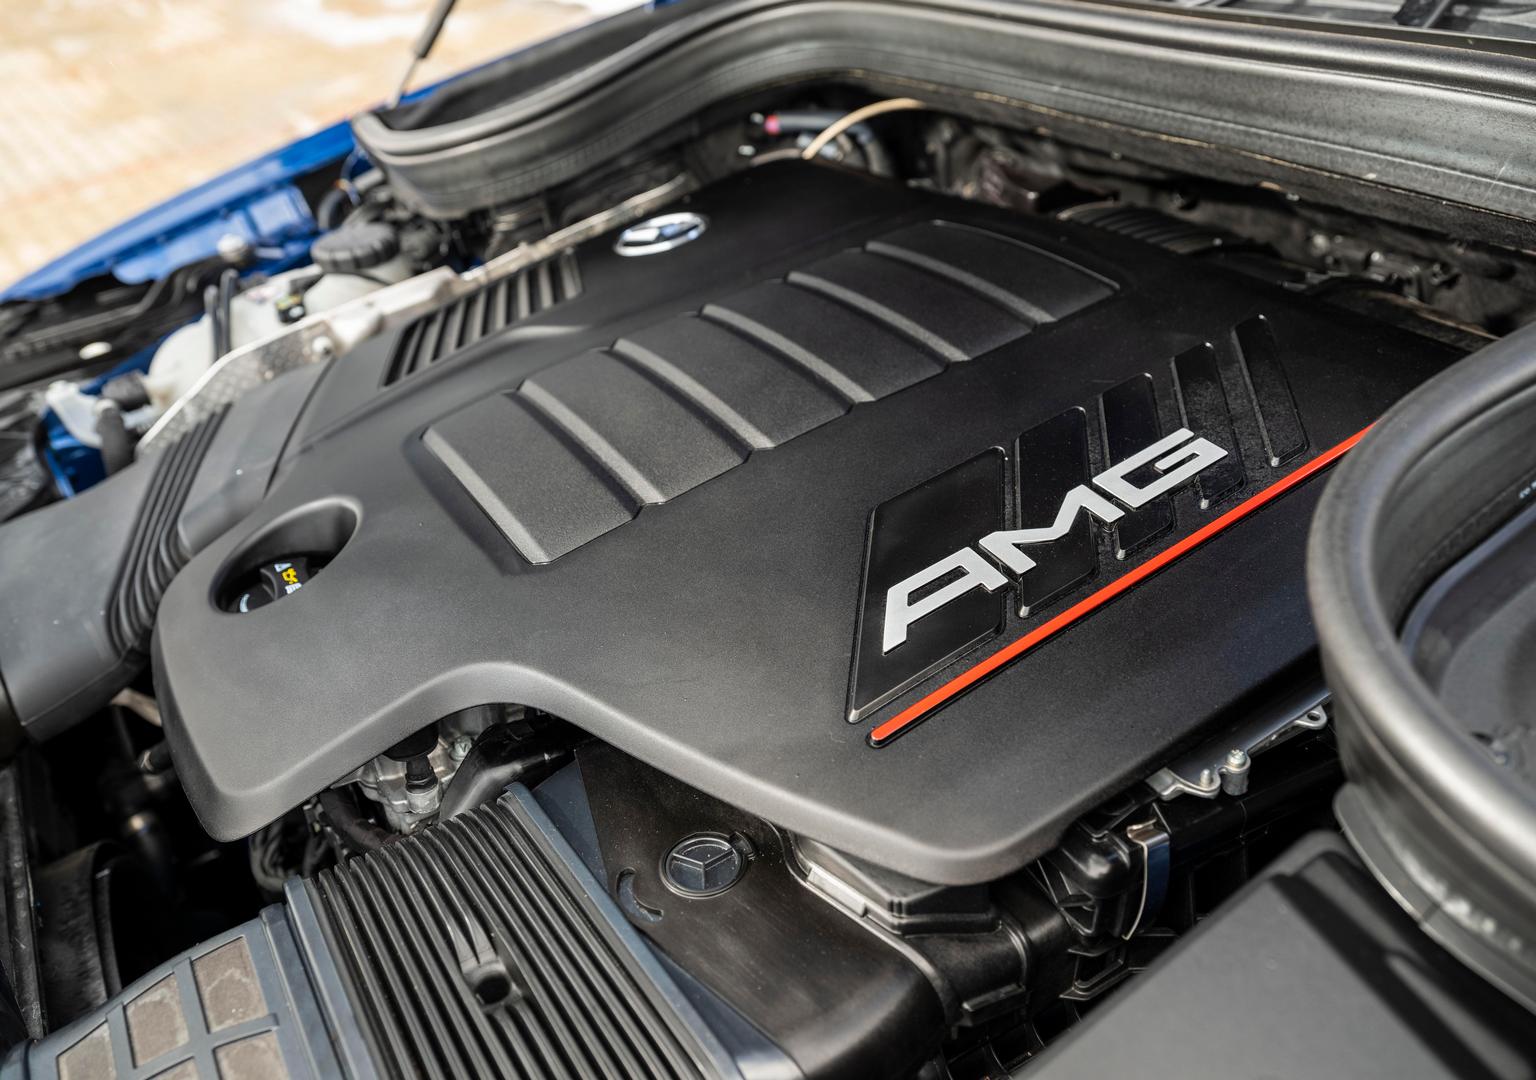 Mercedes-AMG GLE 53 Coupe Engine